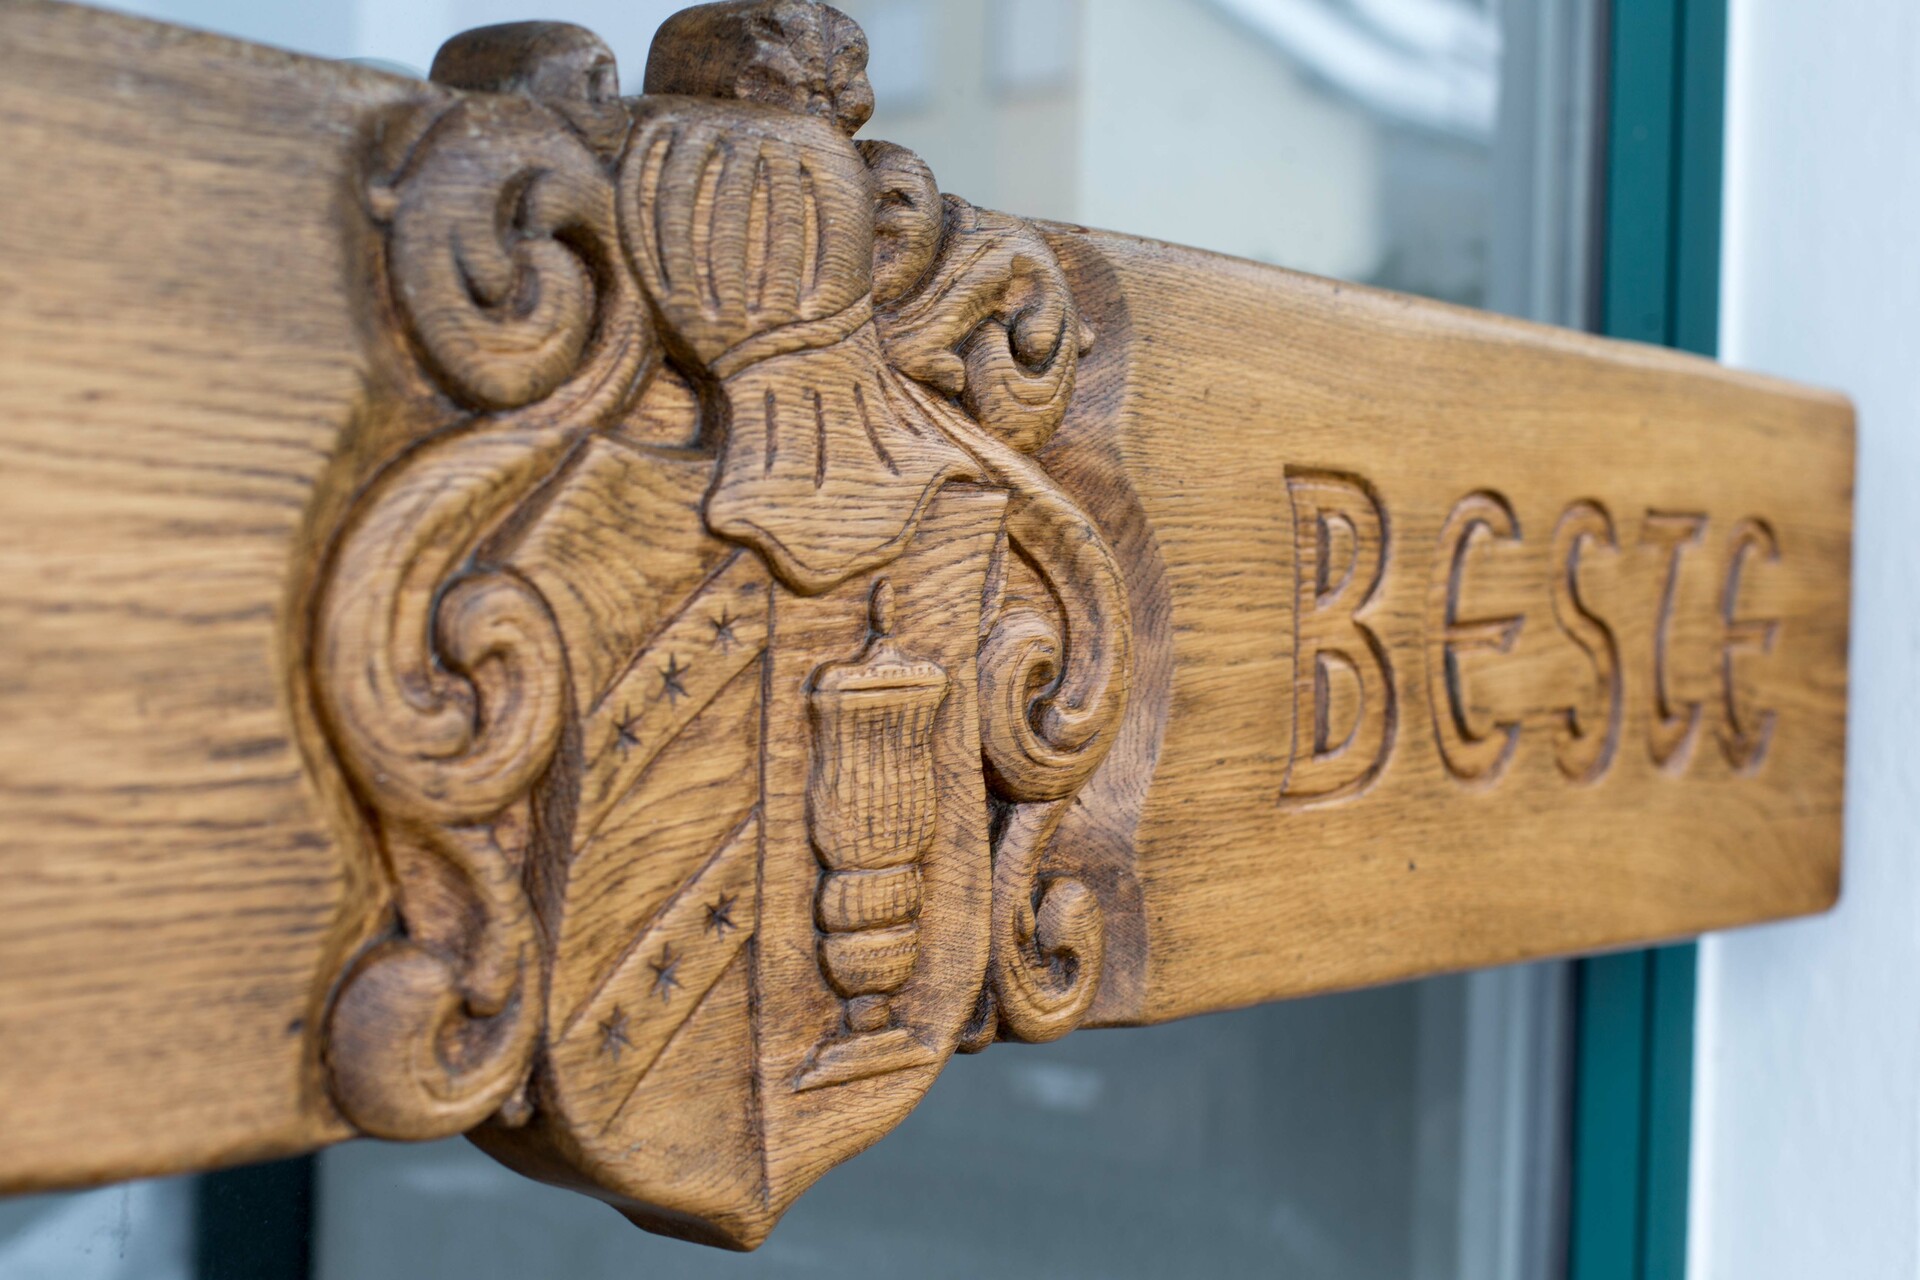 Zu sehen ist die Eingangstür mit dem Beste-Logo in Holz geschnitzt